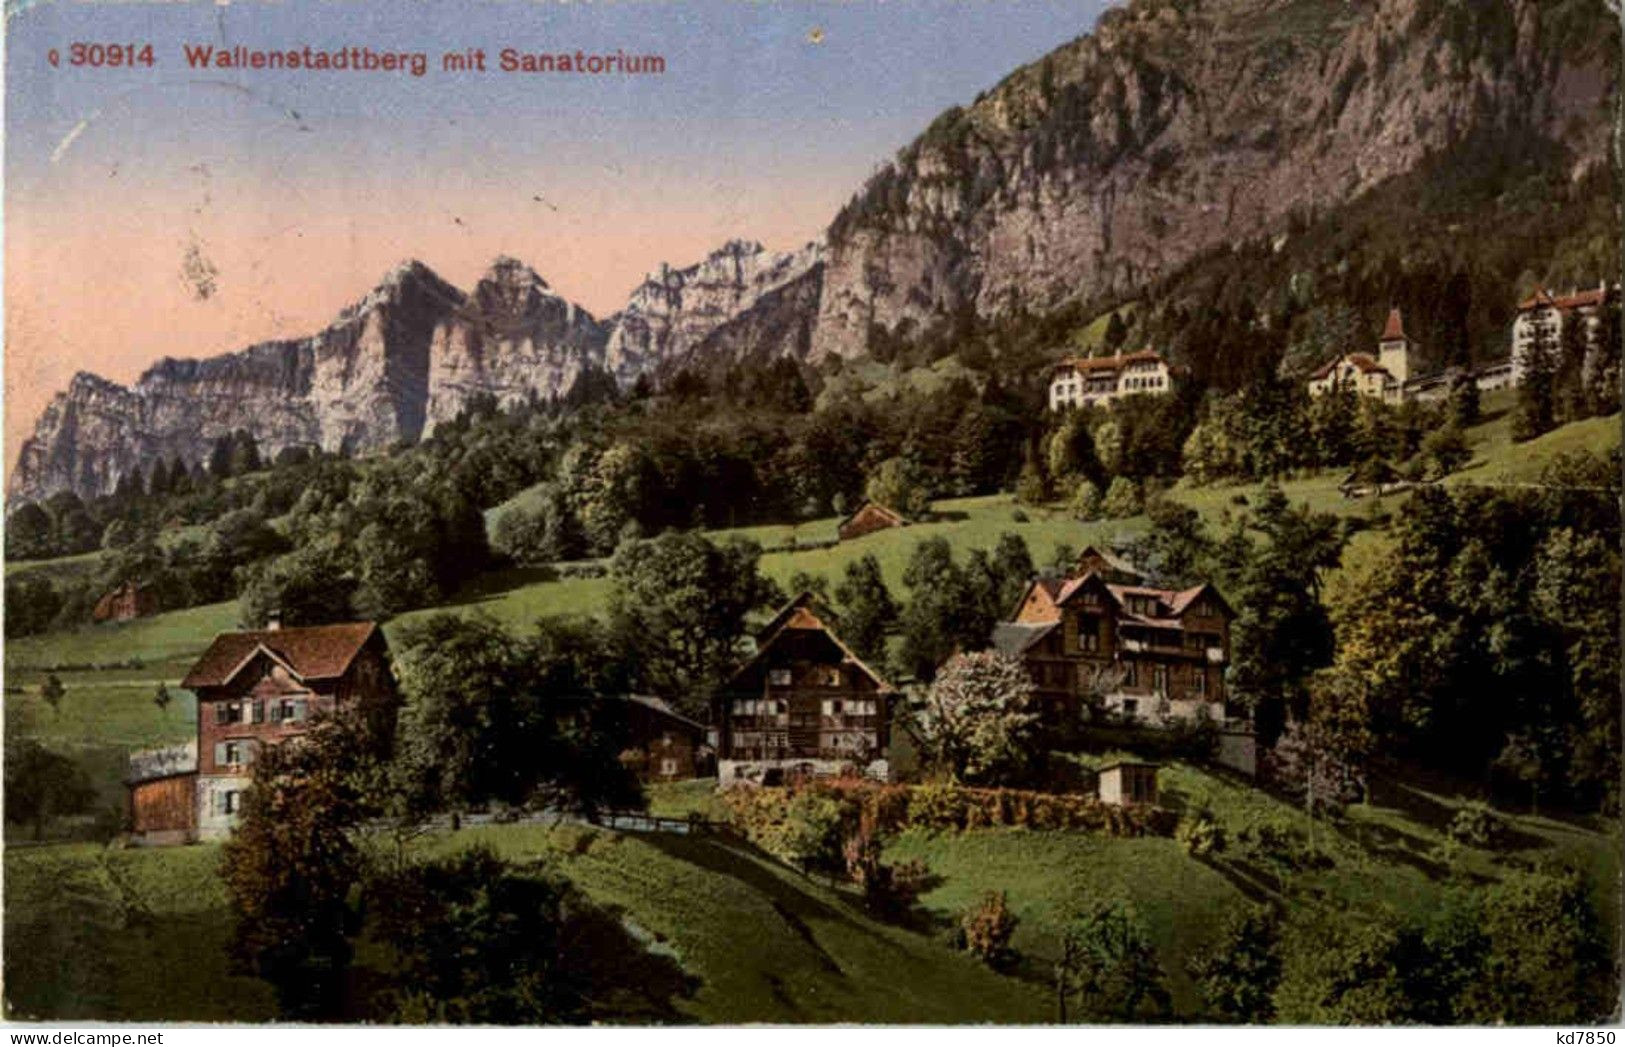 Wallenstadtberg - Sanatorium - Walenstadt